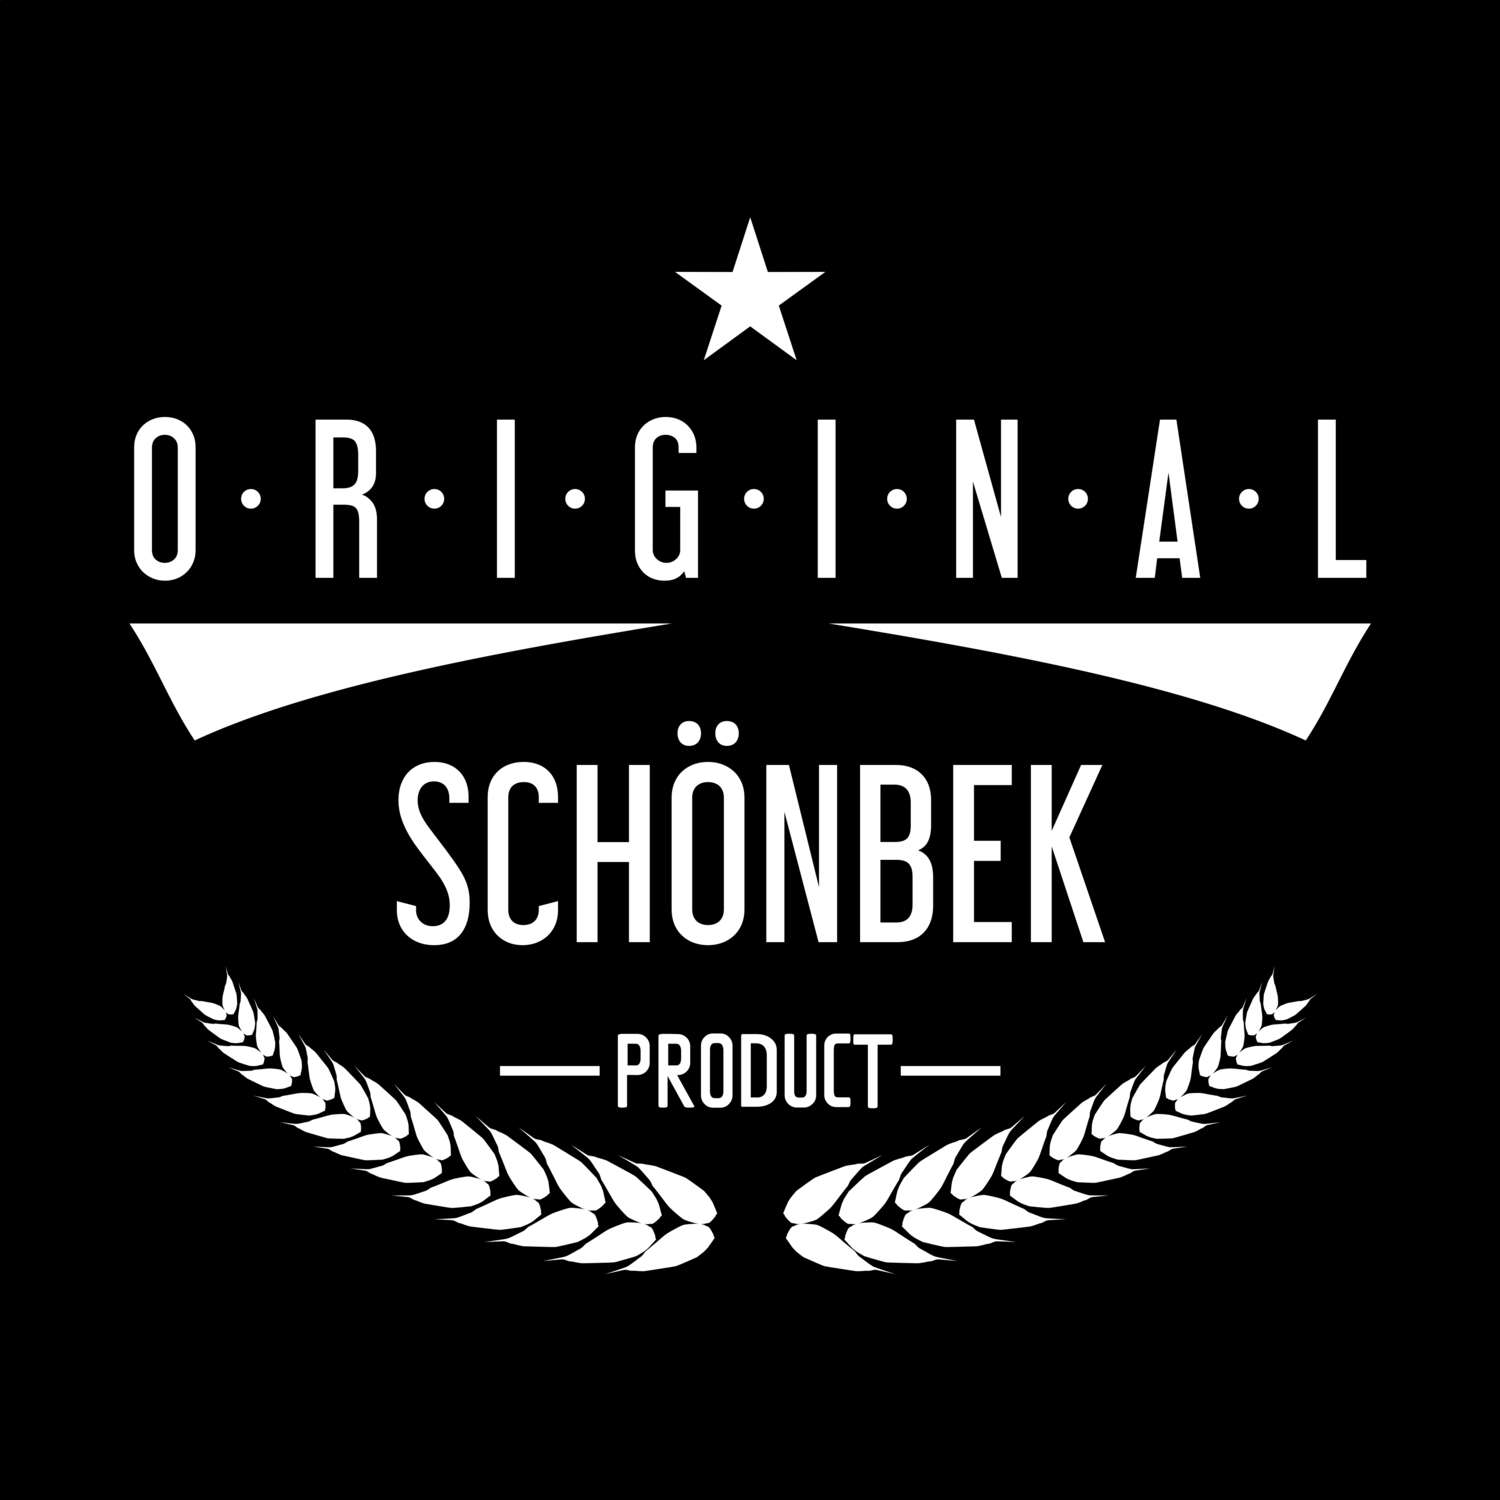 Schönbek T-Shirt »Original Product«